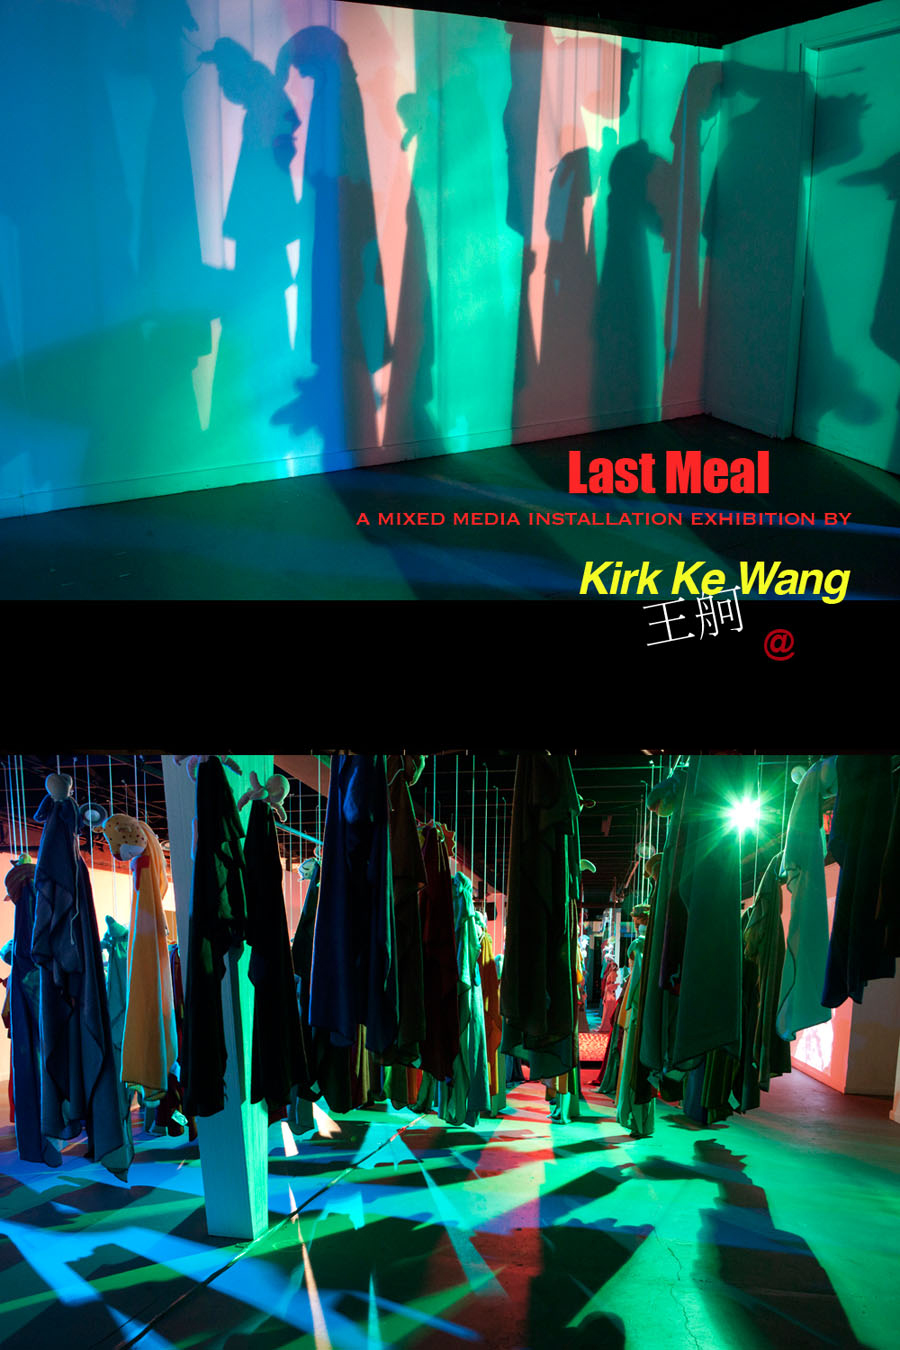 Kirk Ke Wang, Kirk Wang, 王舸, Wang Ke, Wang Ge